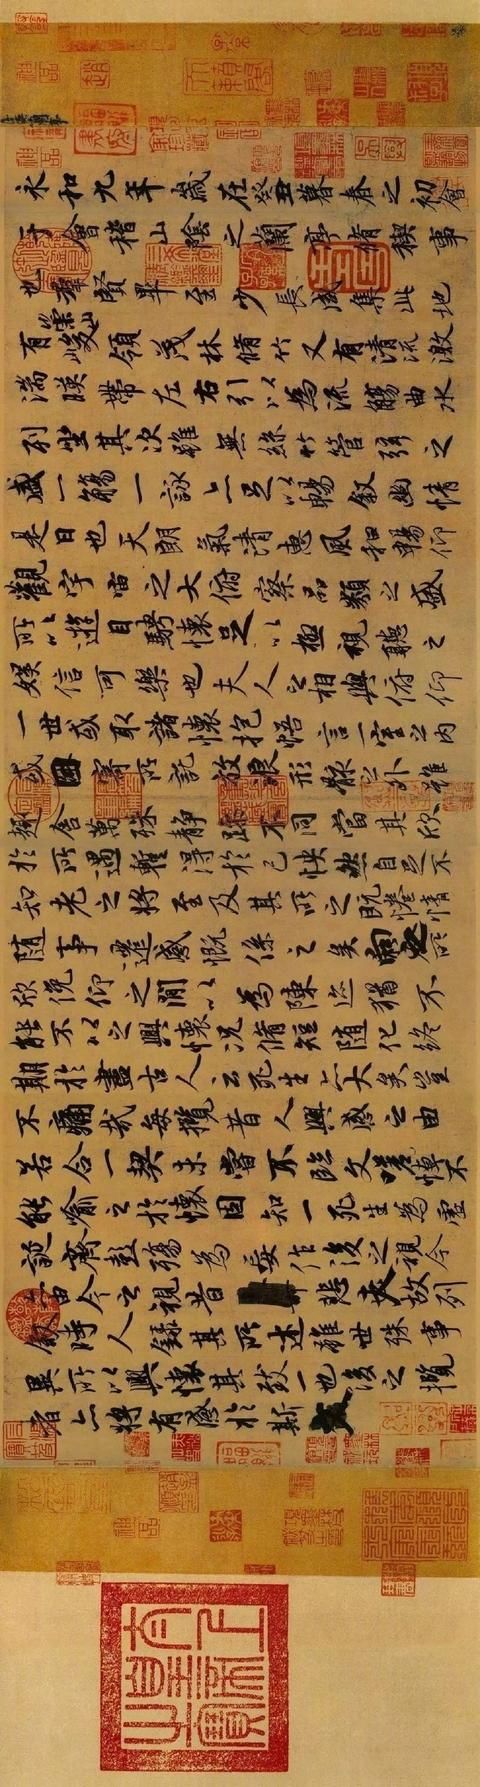 古代书法手卷:王羲之《兰亭序》,号称"天下第一行书"!